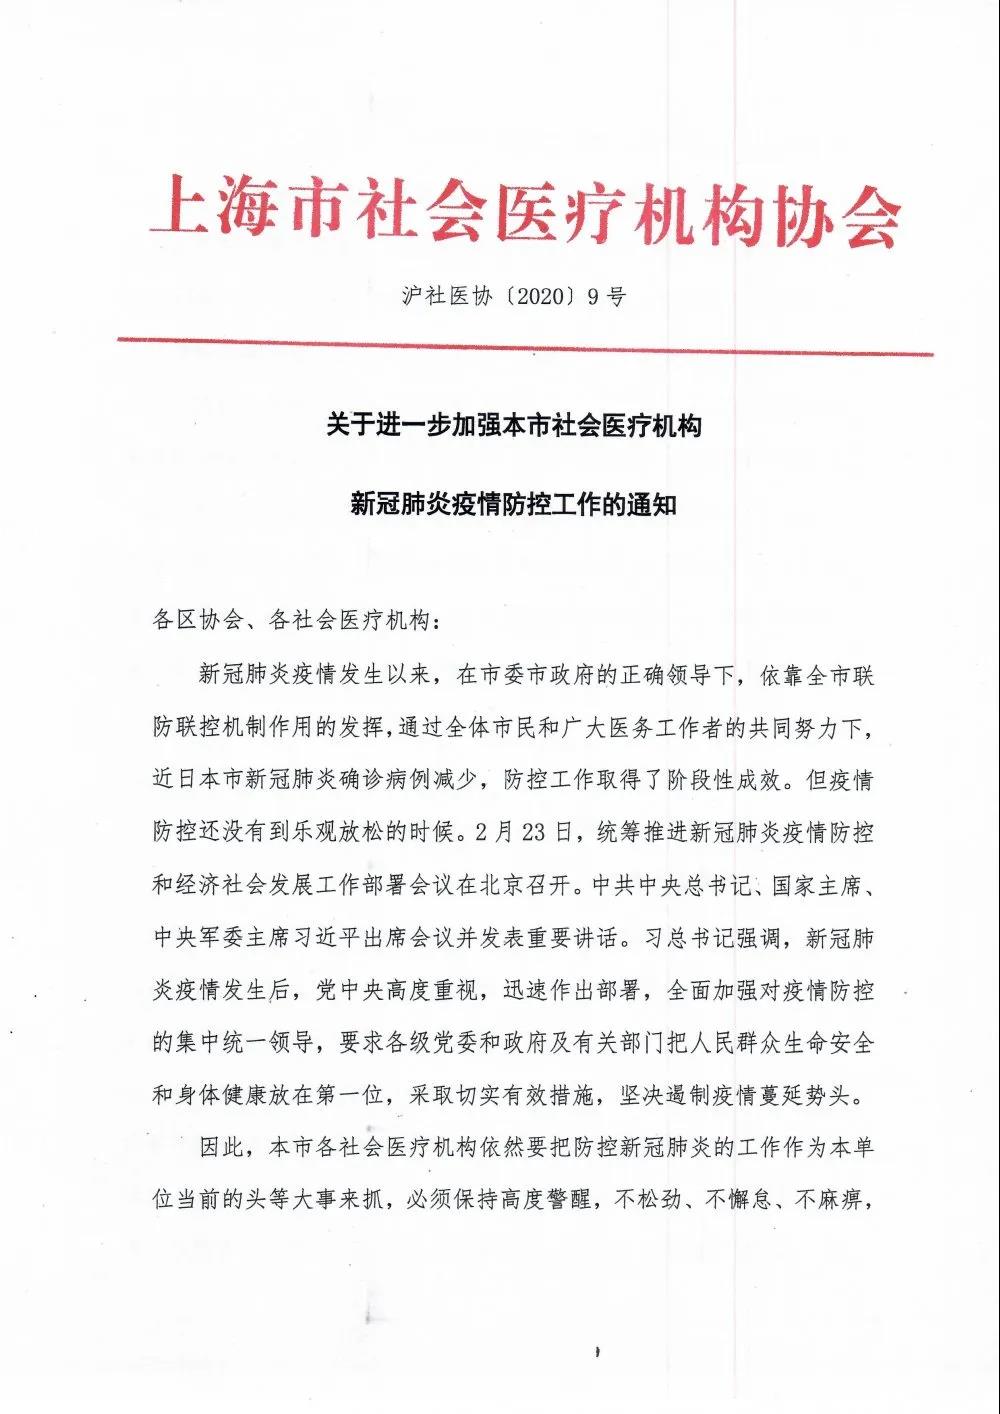 地方协会丨上海市社会医疗机构协会 关于进一步加强本市社会医疗机构新冠肺炎疫情防控工作的通知